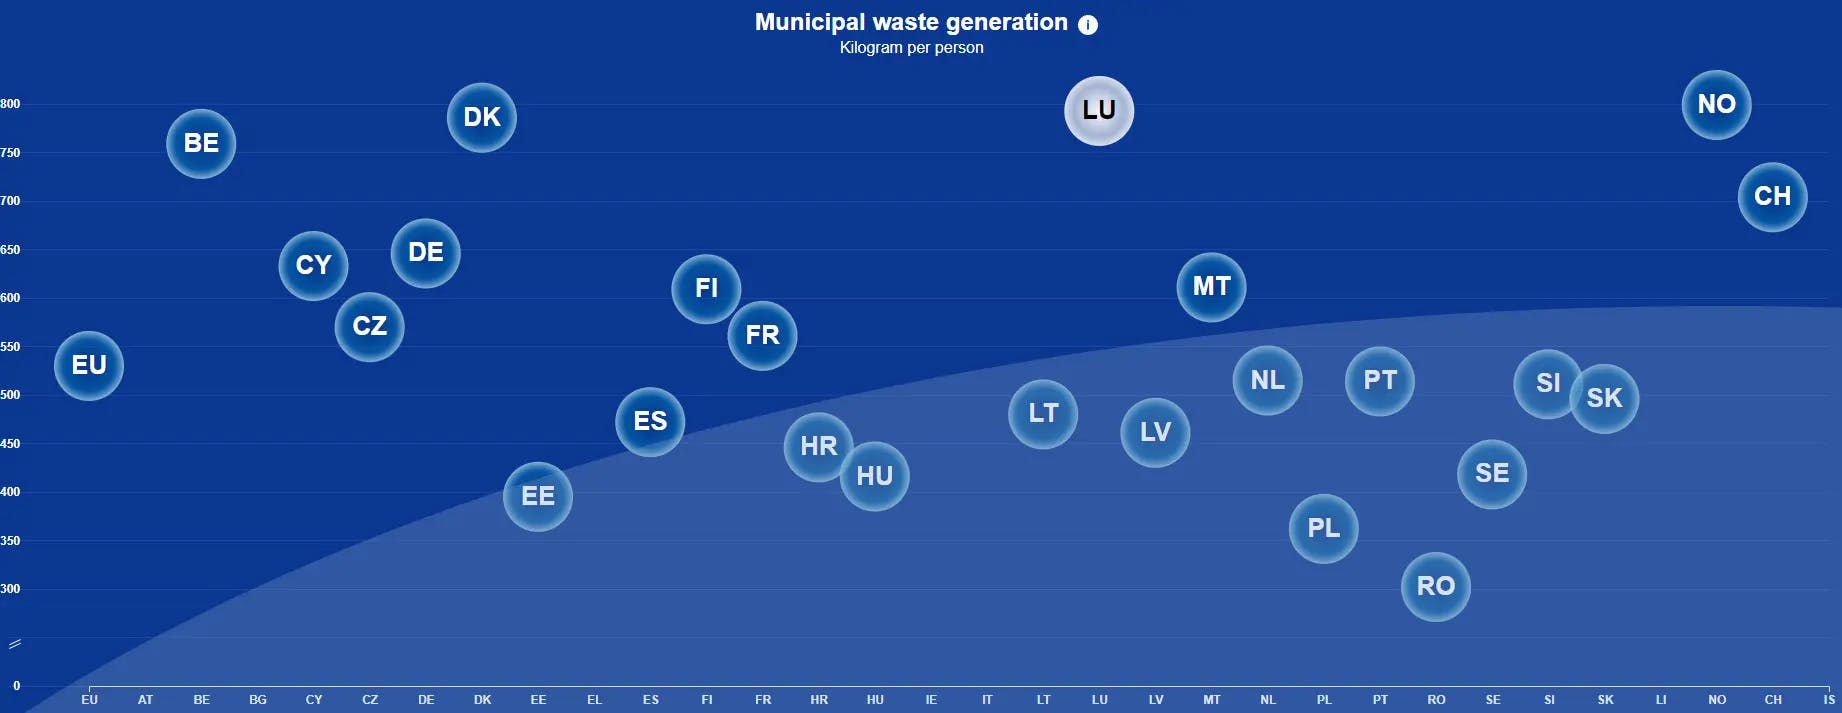 Municipal waste generation